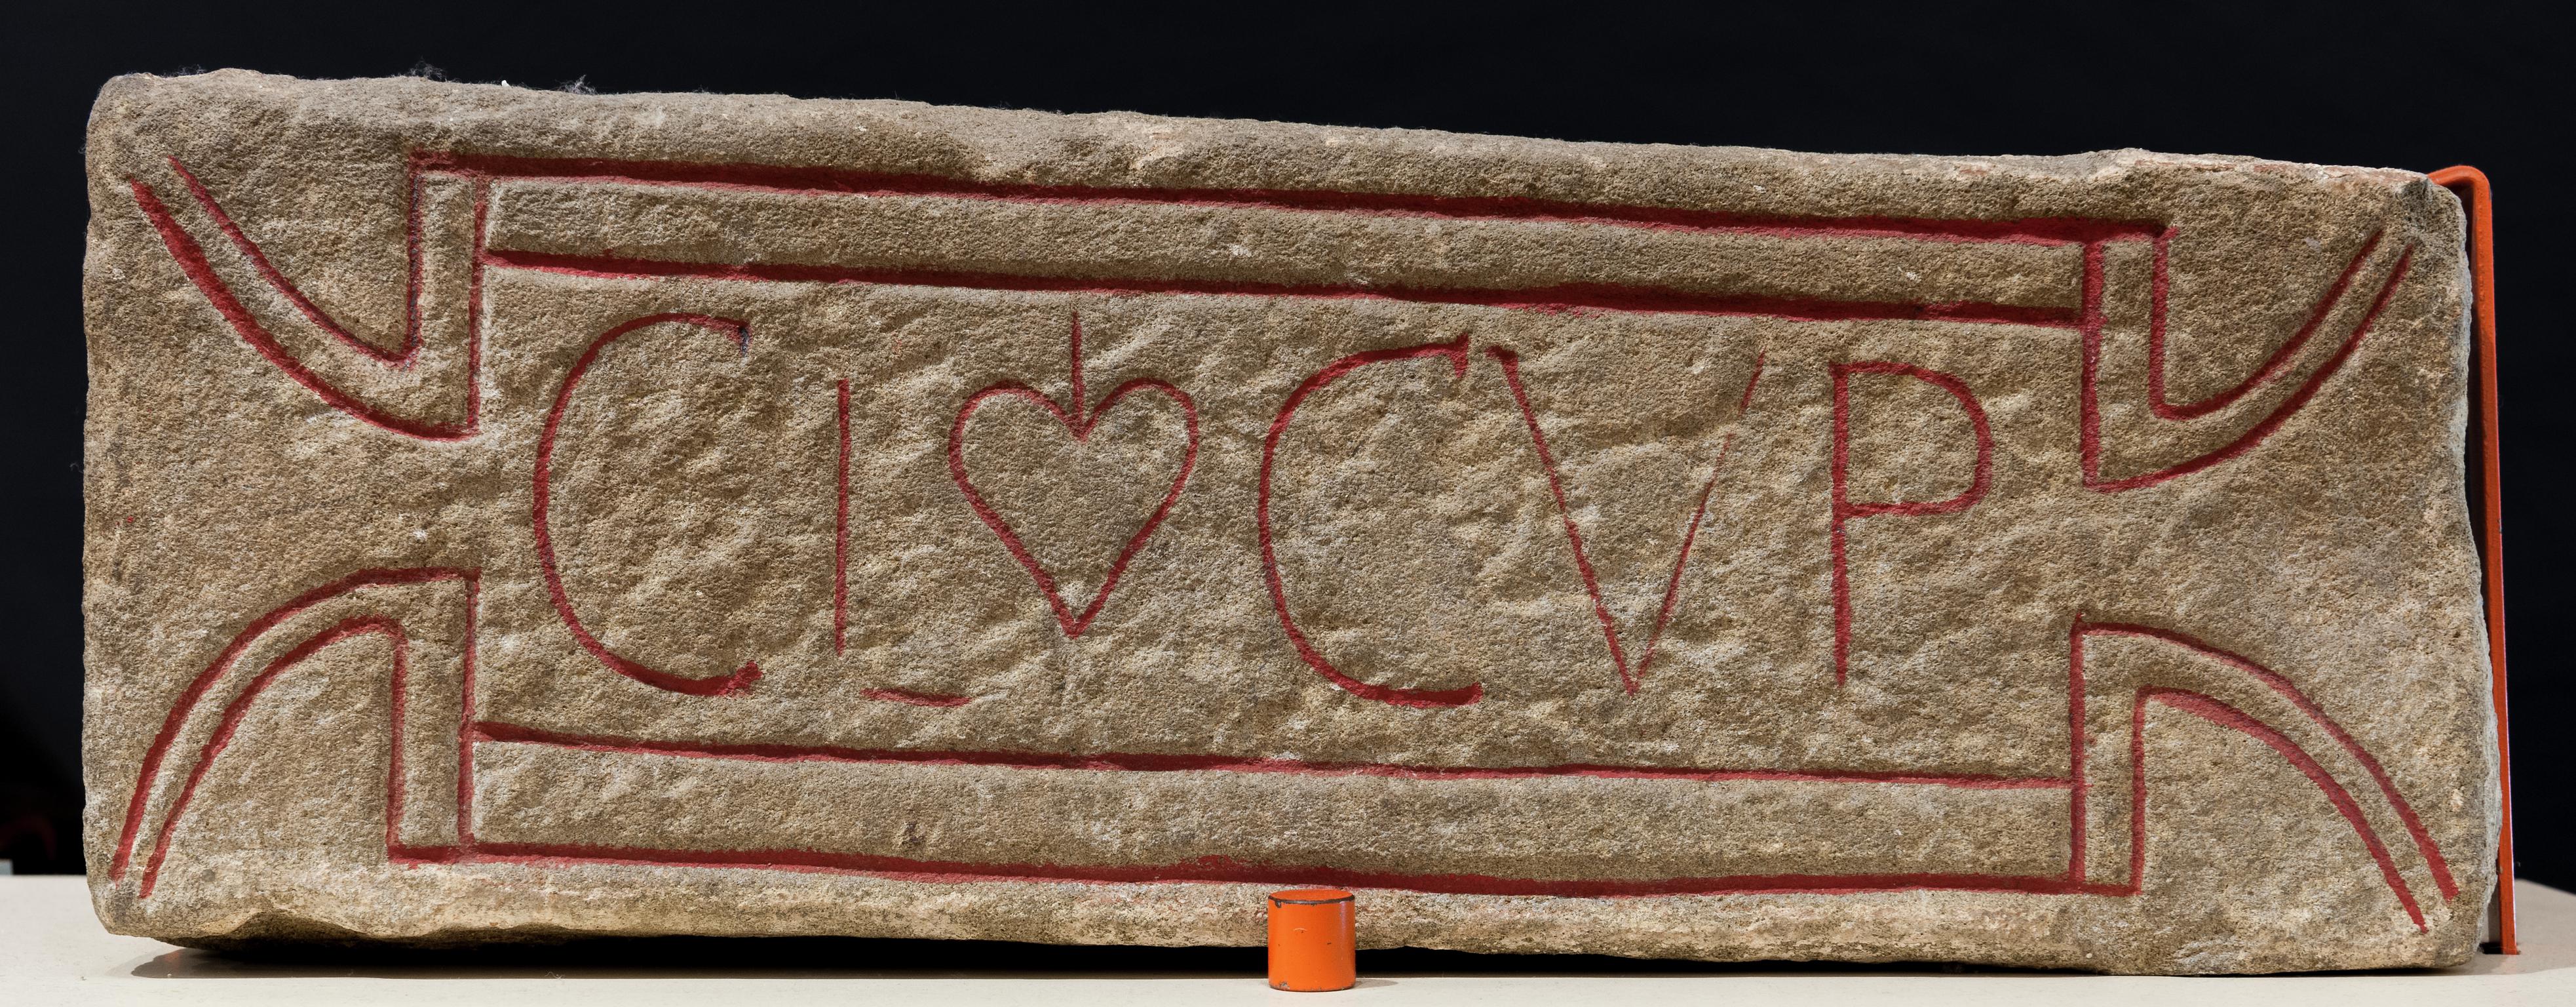 Roman stone inscription (Claudius Cupitus)